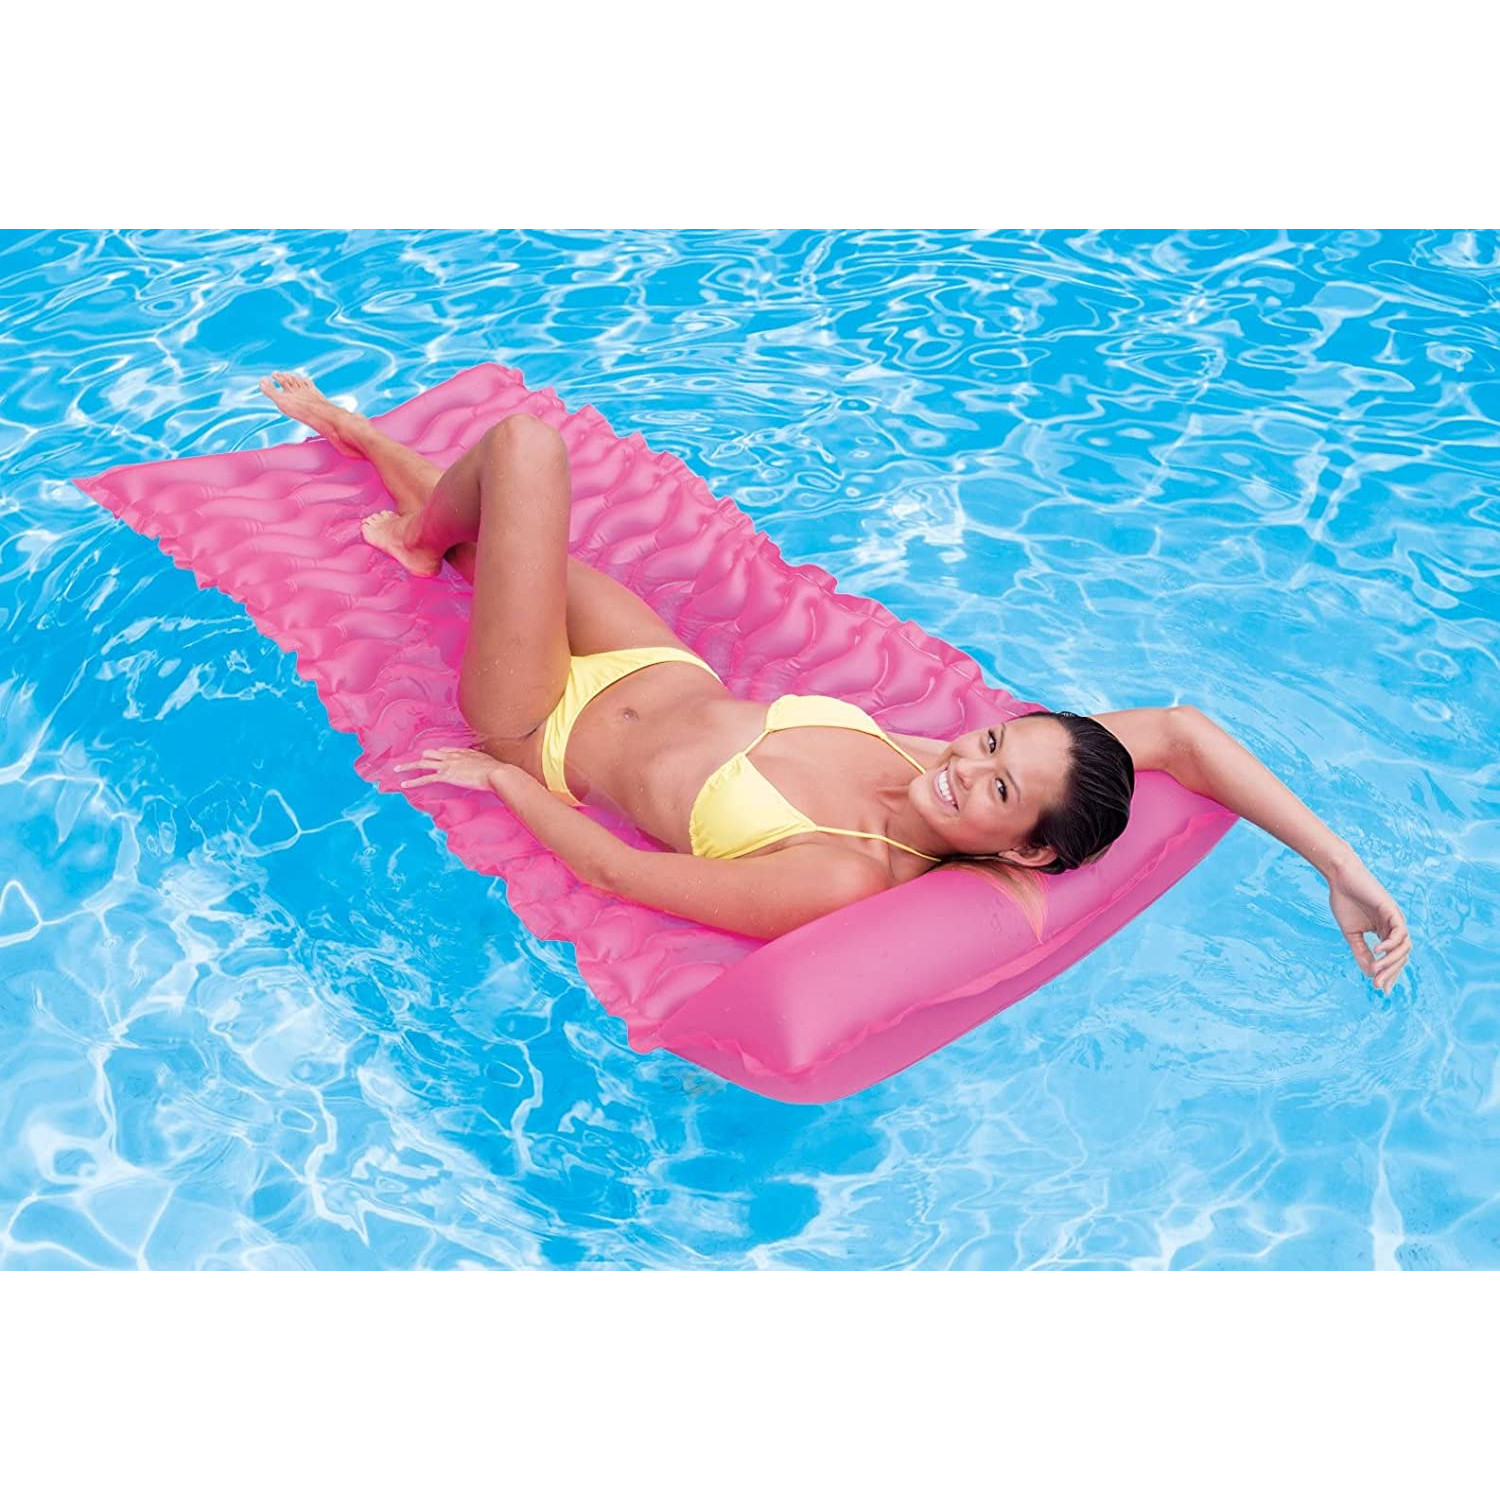 INTEX 58807EU - (zusammenrollbar, pink 229x86cm) Tote-n-Float - Luftmatratze Wasserspielzeug